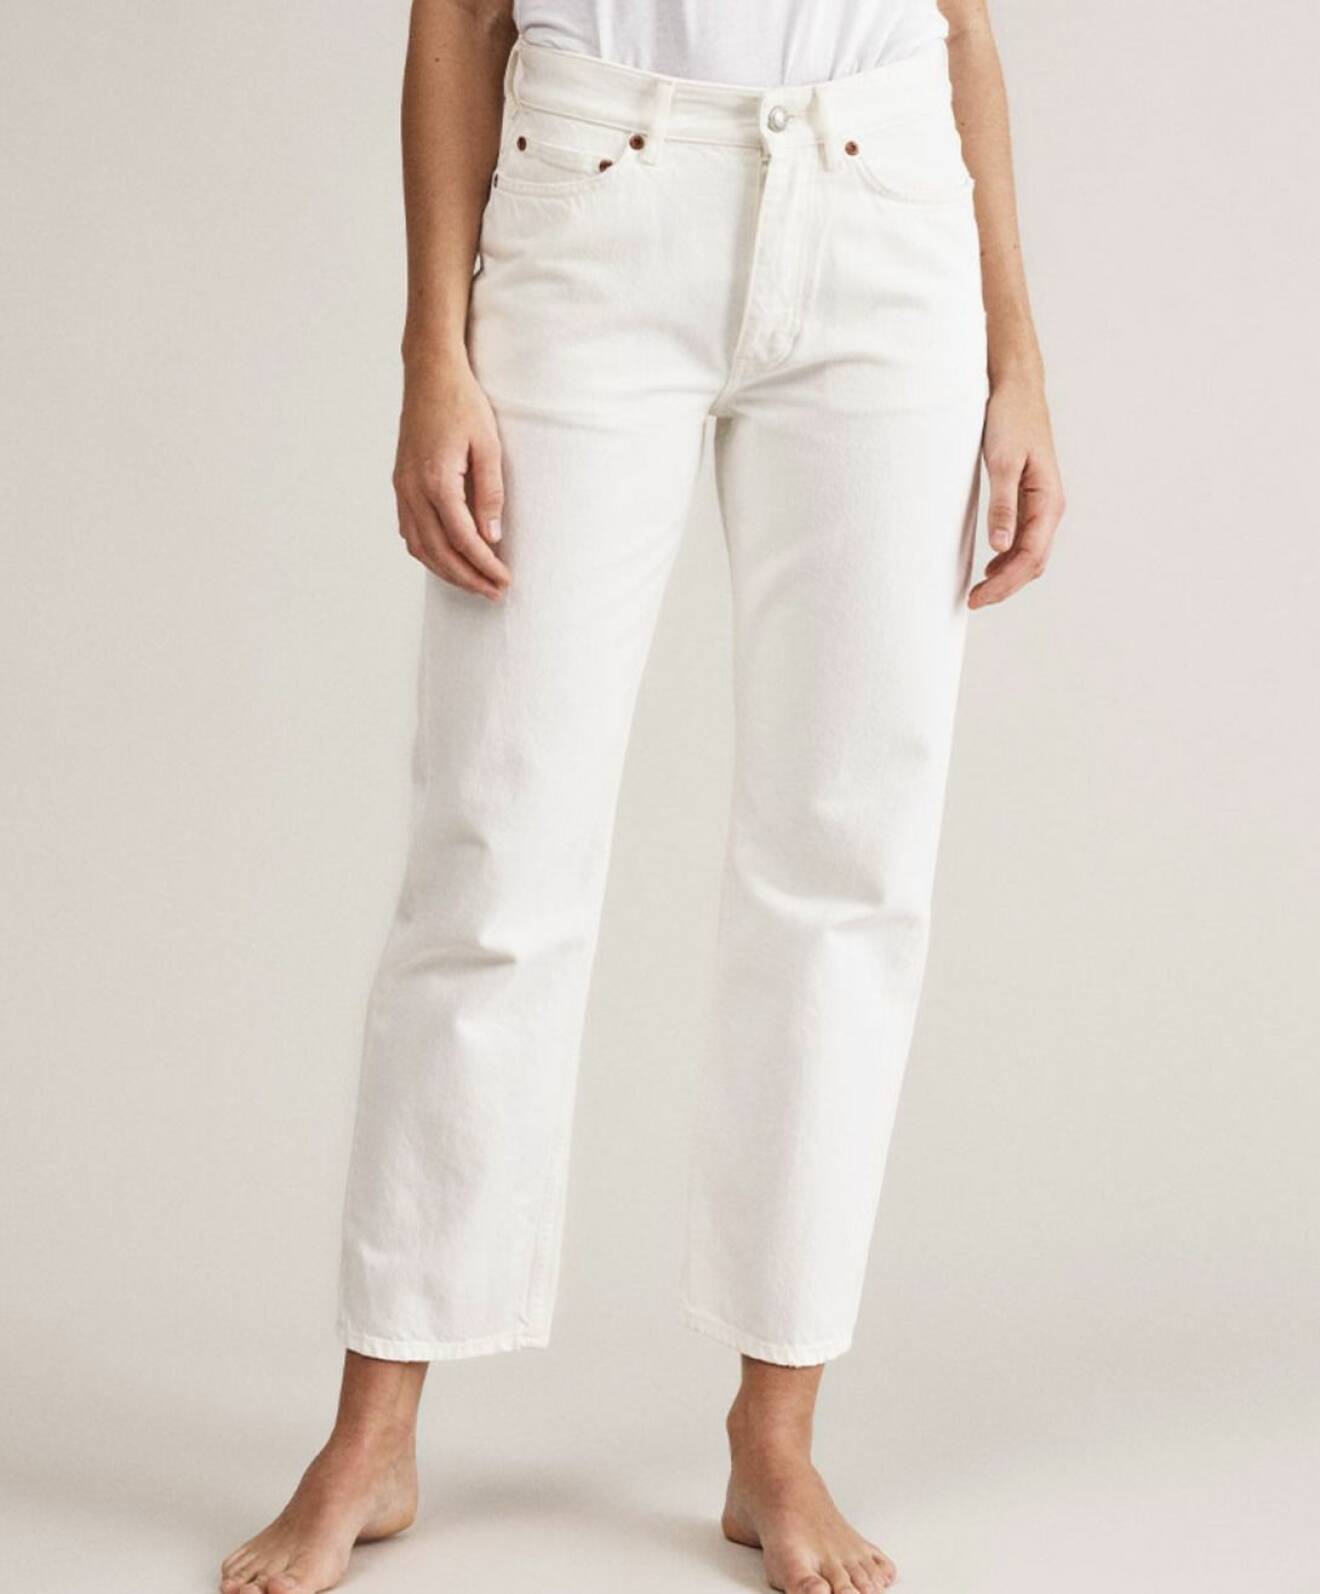 Won Hundred erbjuder dessa vita jeans i "mom jeans" modell där hög midja och något avsmalnande ben står i fokus.